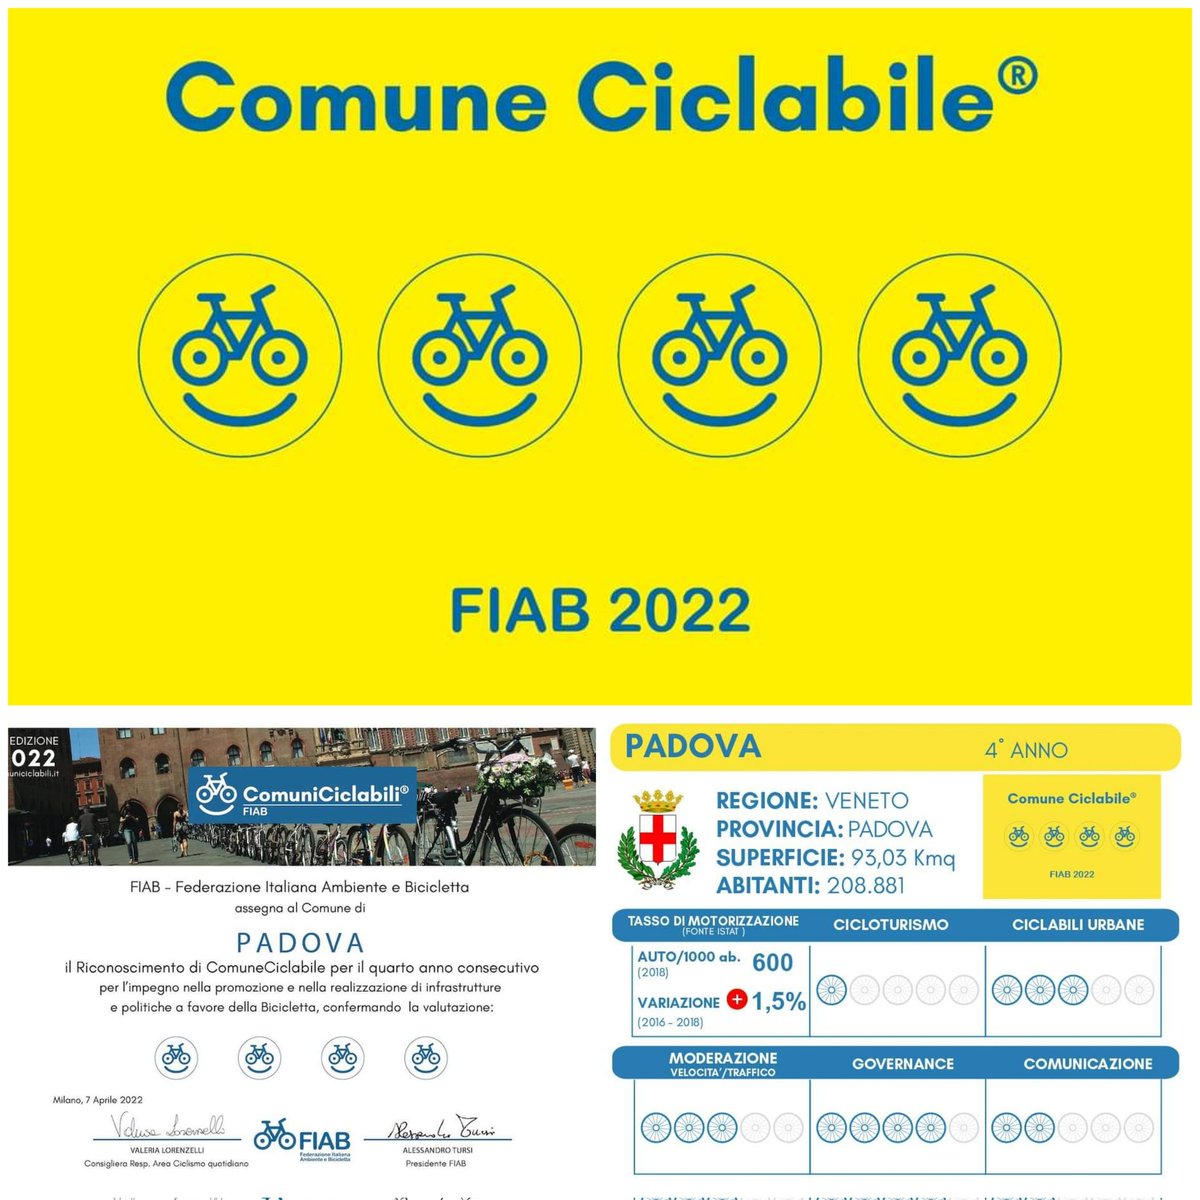 Anche nel 2022 Padova si riconferma comune ciclabile con quattro bike - smile. 
#comuniciclabili
#comunedipadova
#fiabpadova
#fiabitalia